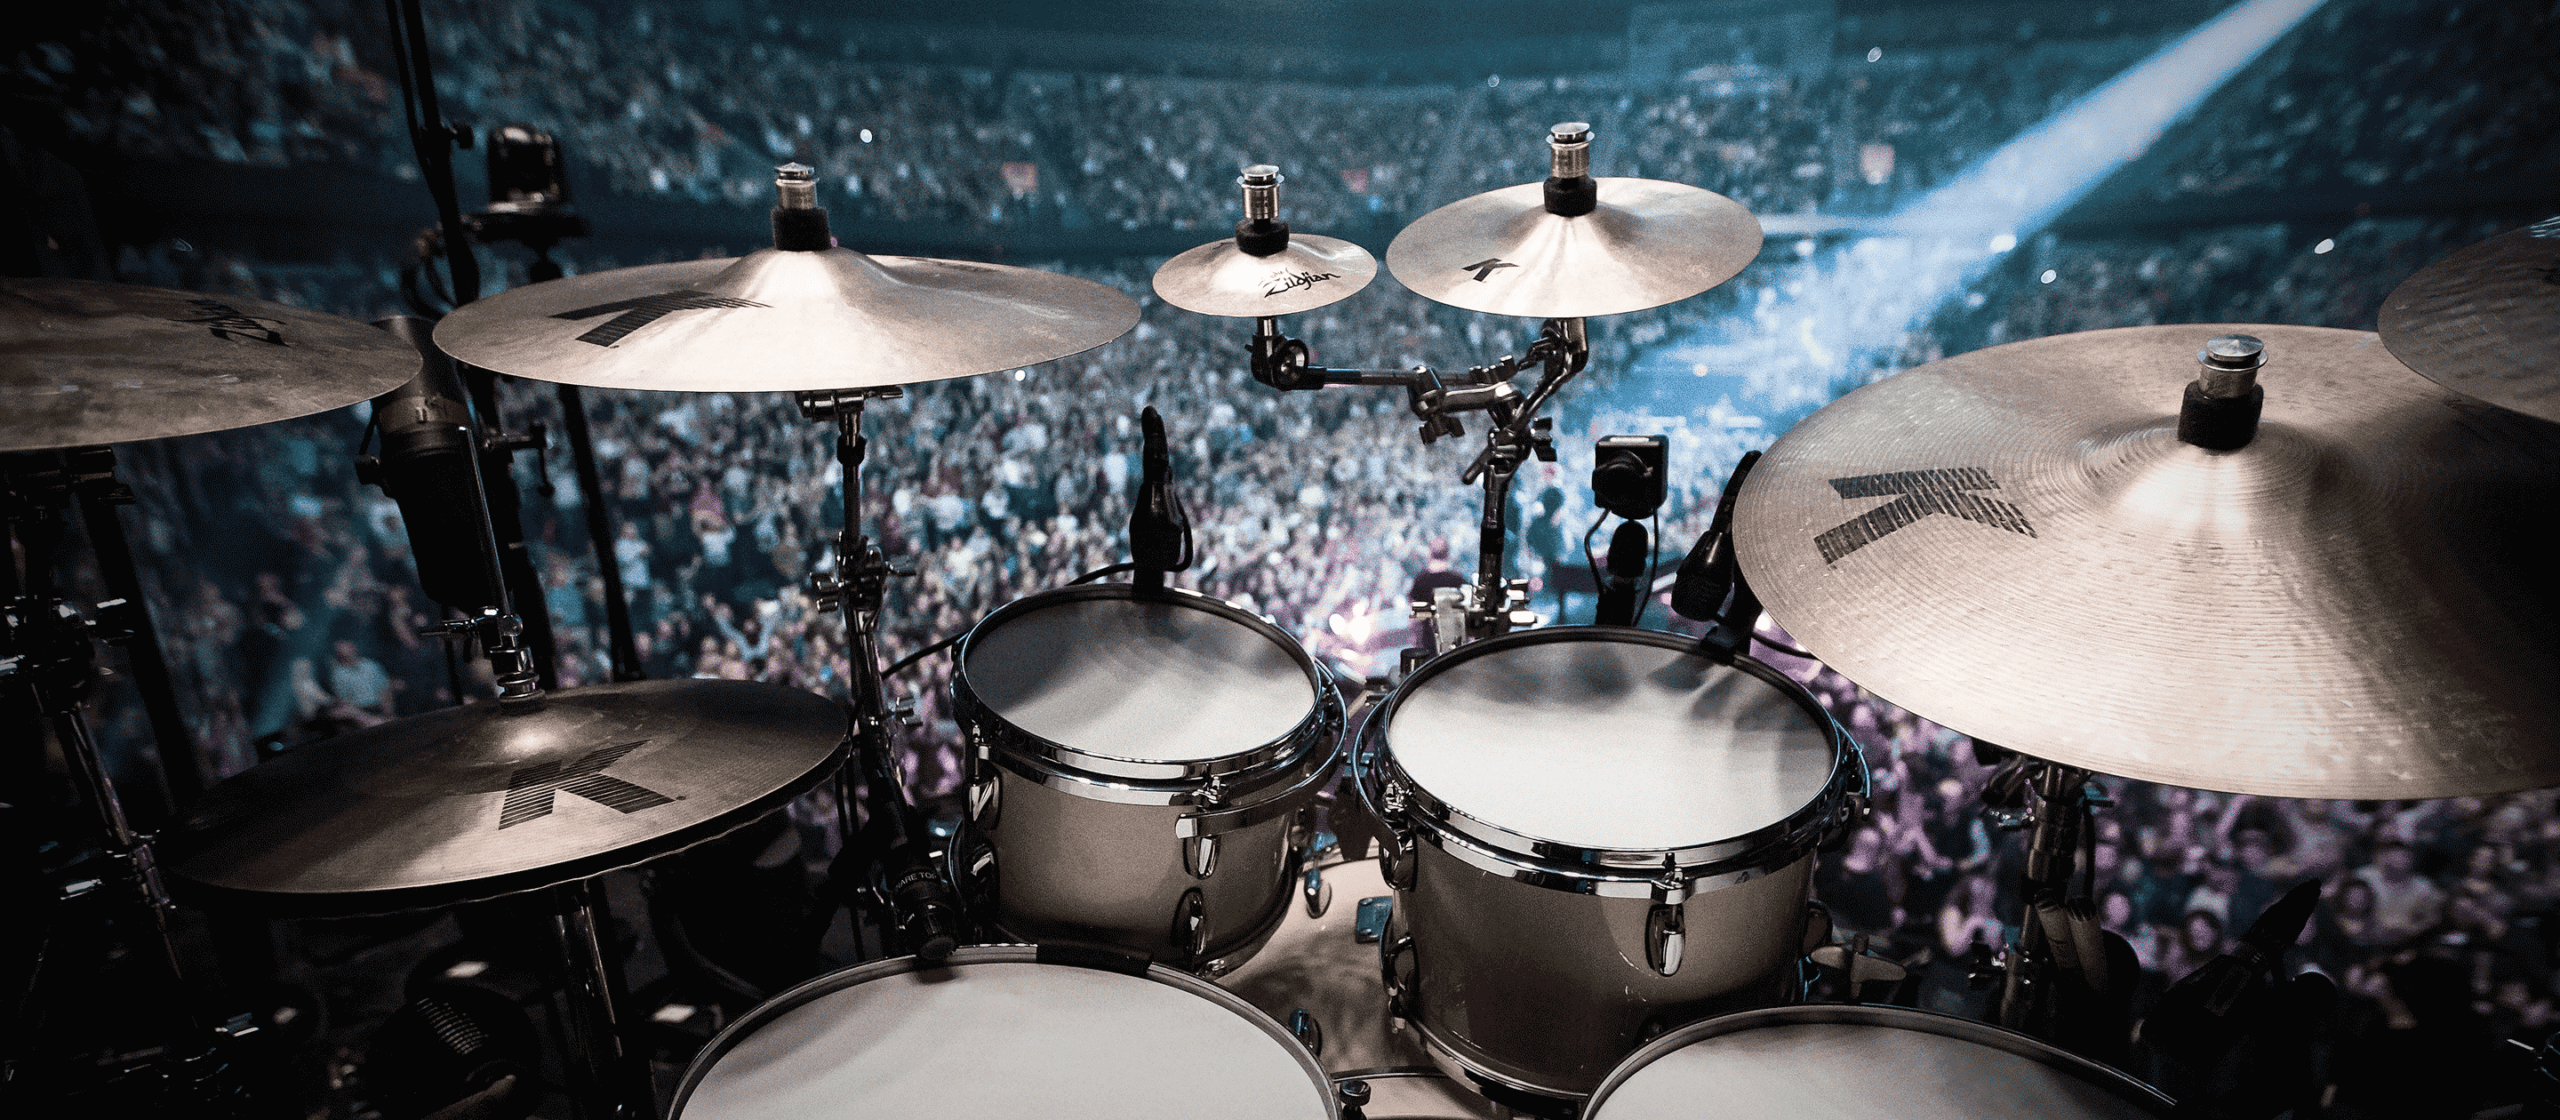 The Cymbal For You – Breaking Down The Zildjian Range